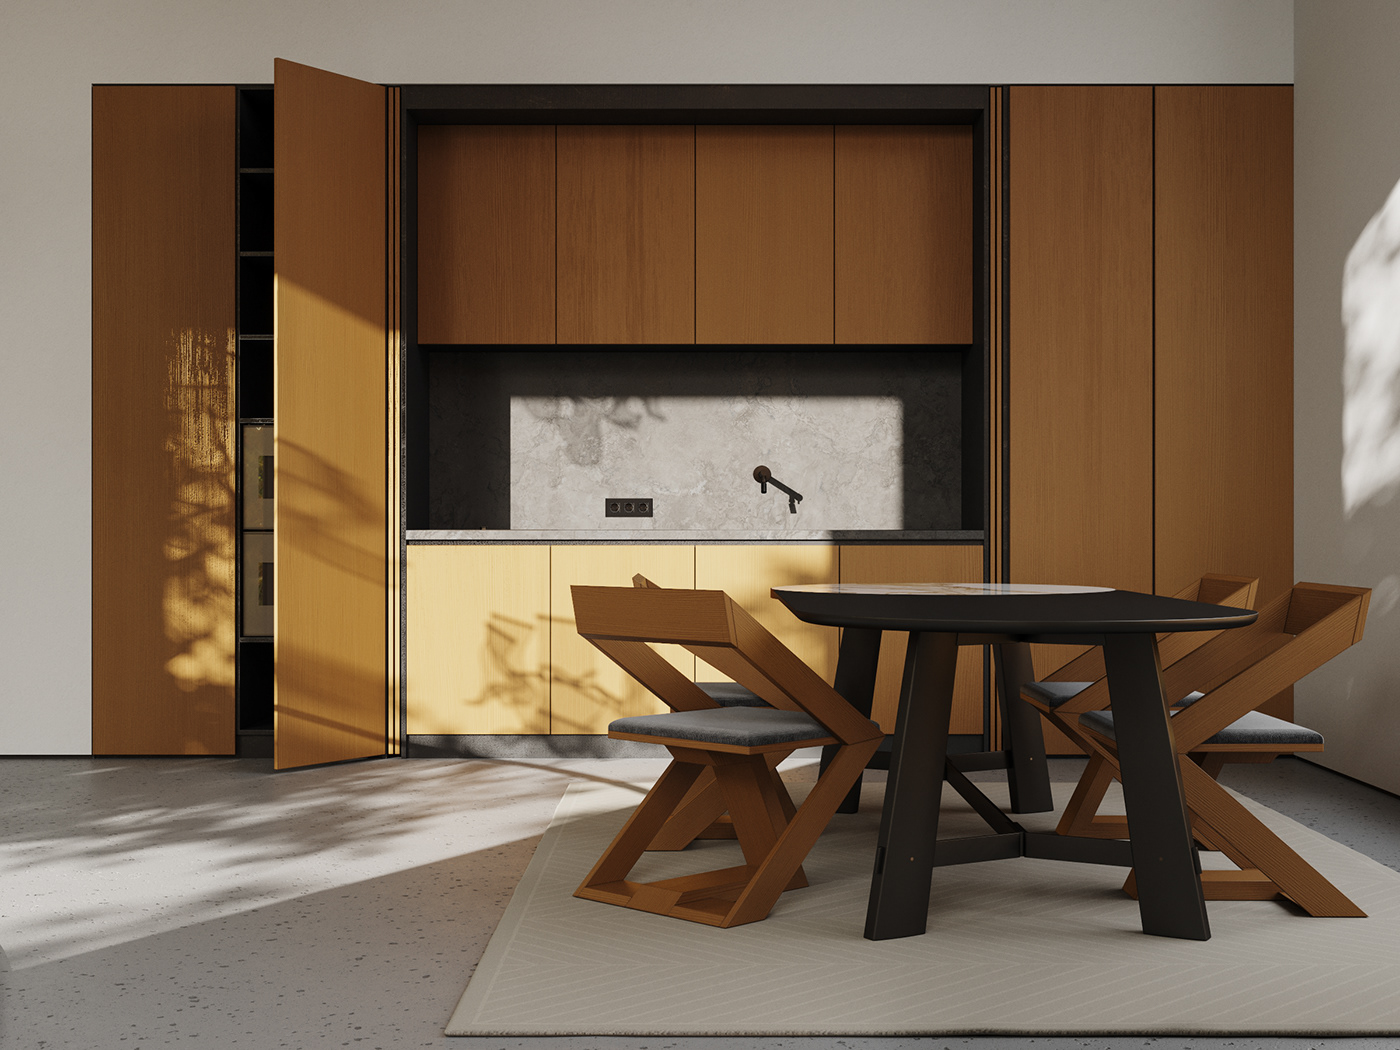 3D Visualization Applicata contemporary corona renderer interior design  Interior Visualization modern interior